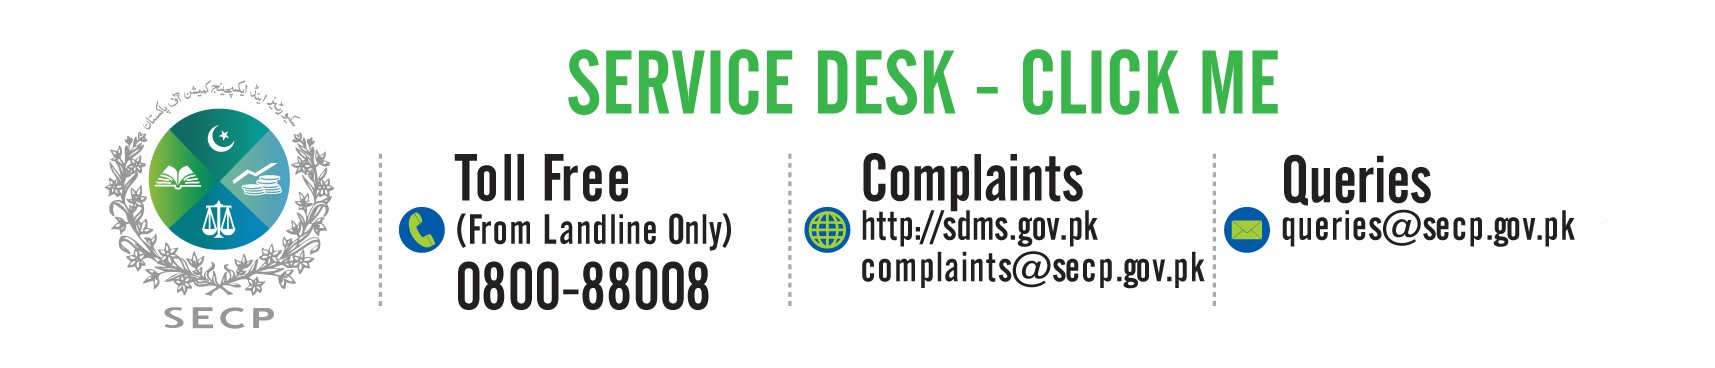 SECP Service Desk - Click Me